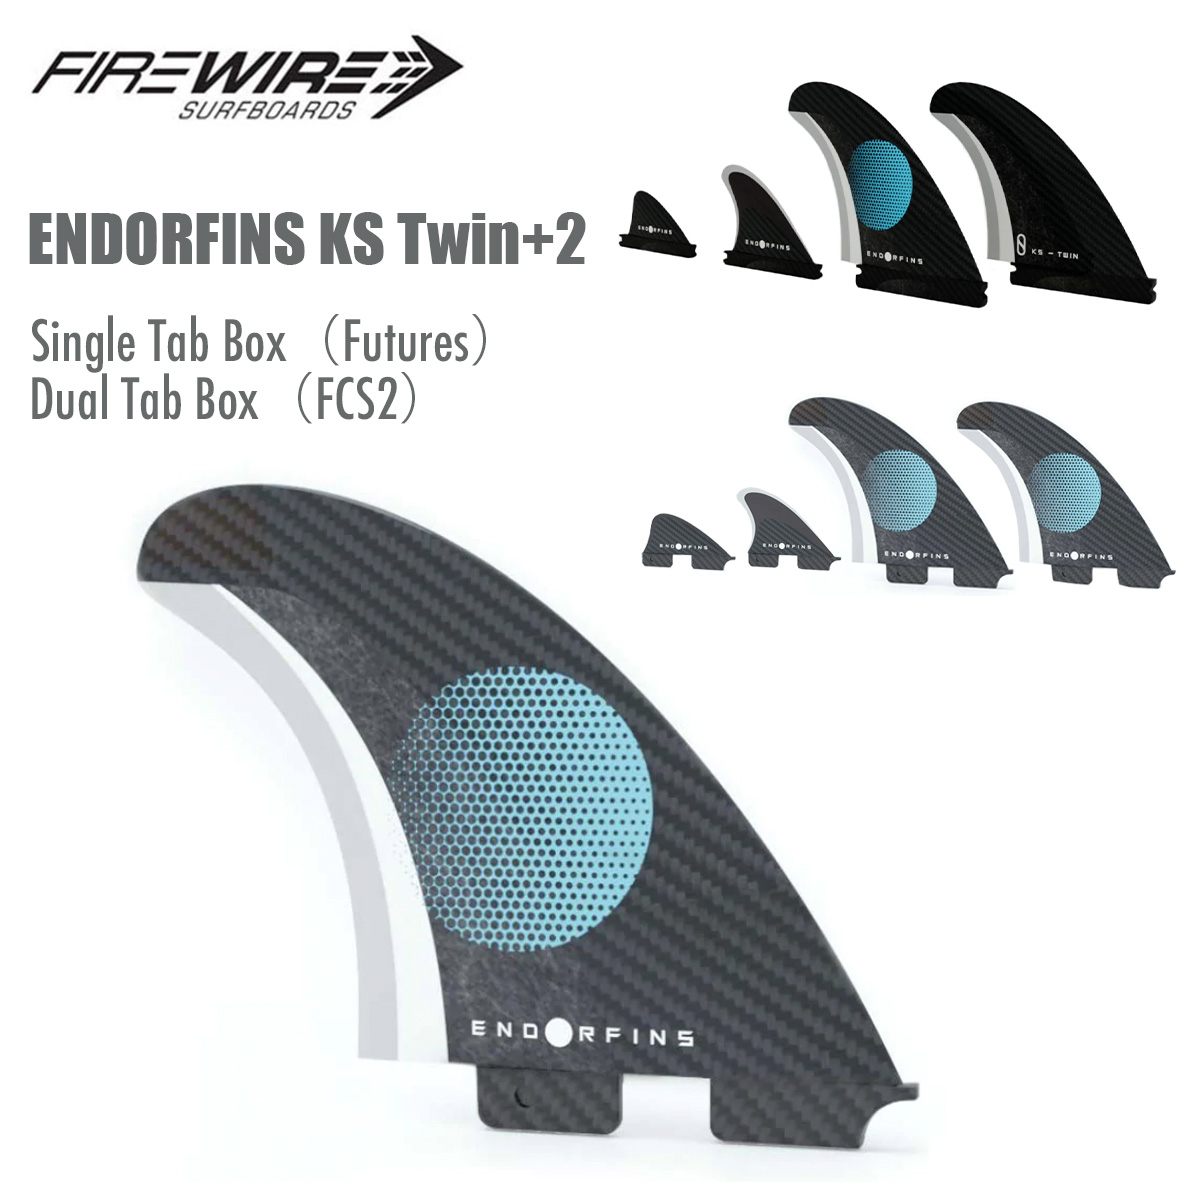 FIREWIRE Slater Designs ENDORFINS KS1